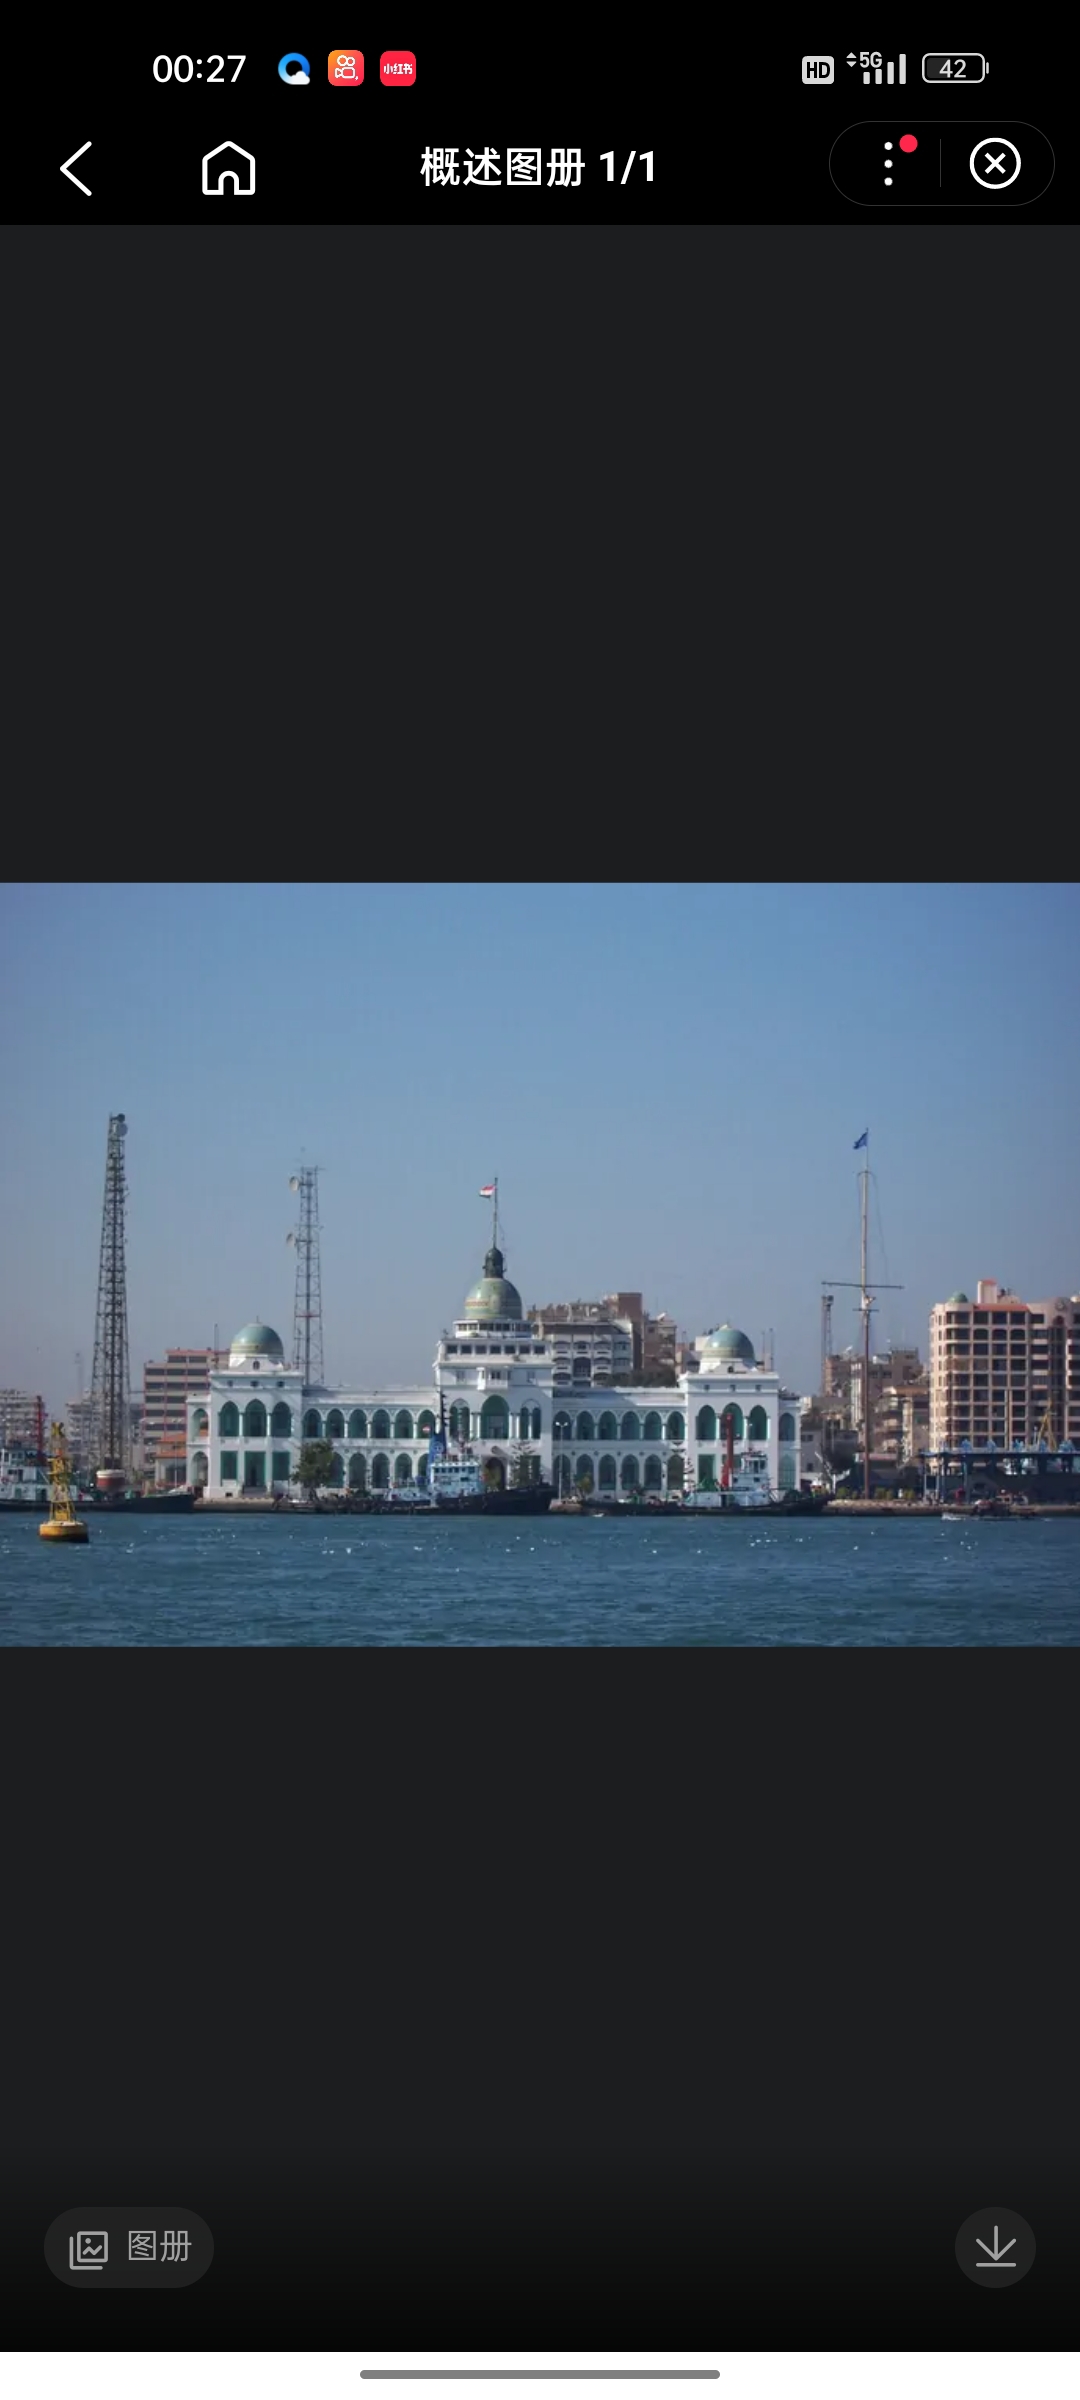 塞得港（PORT SAID）是埃及东北部城市（全称：阿拉伯埃及共和国THE ARAB REPUBLI